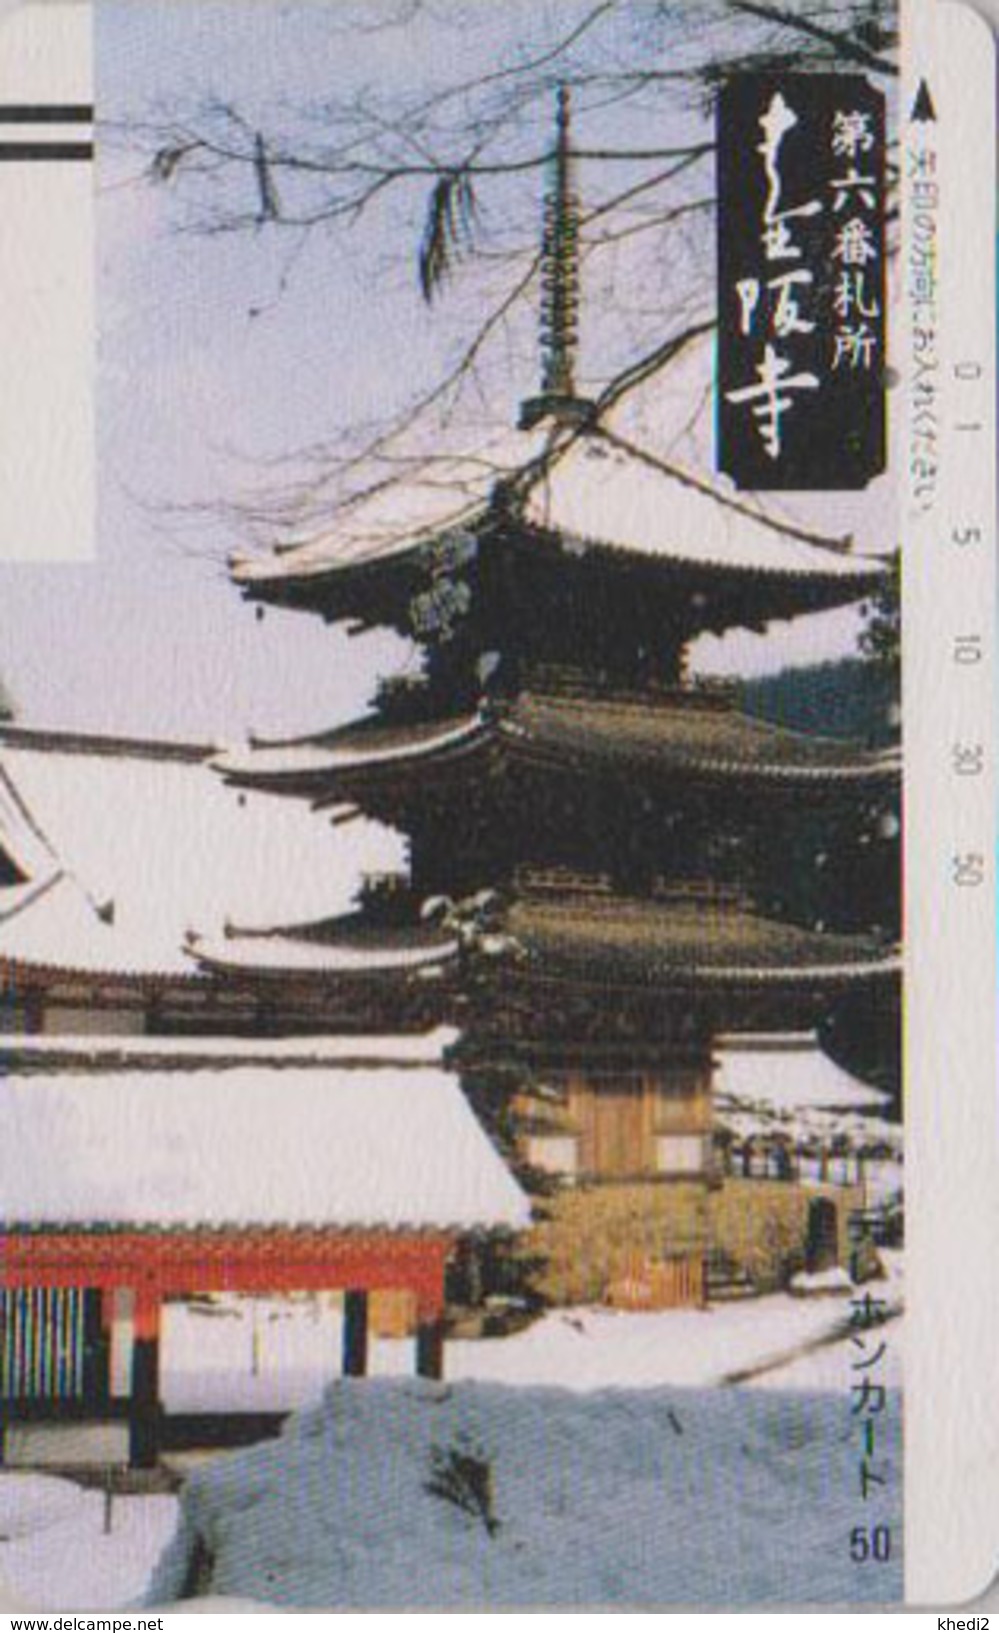 Télécarte Ancienne Japon / 330-1488 - PAGODE - CASTLE TEMPLE Japan Front Bar Phonecard / B - Japan